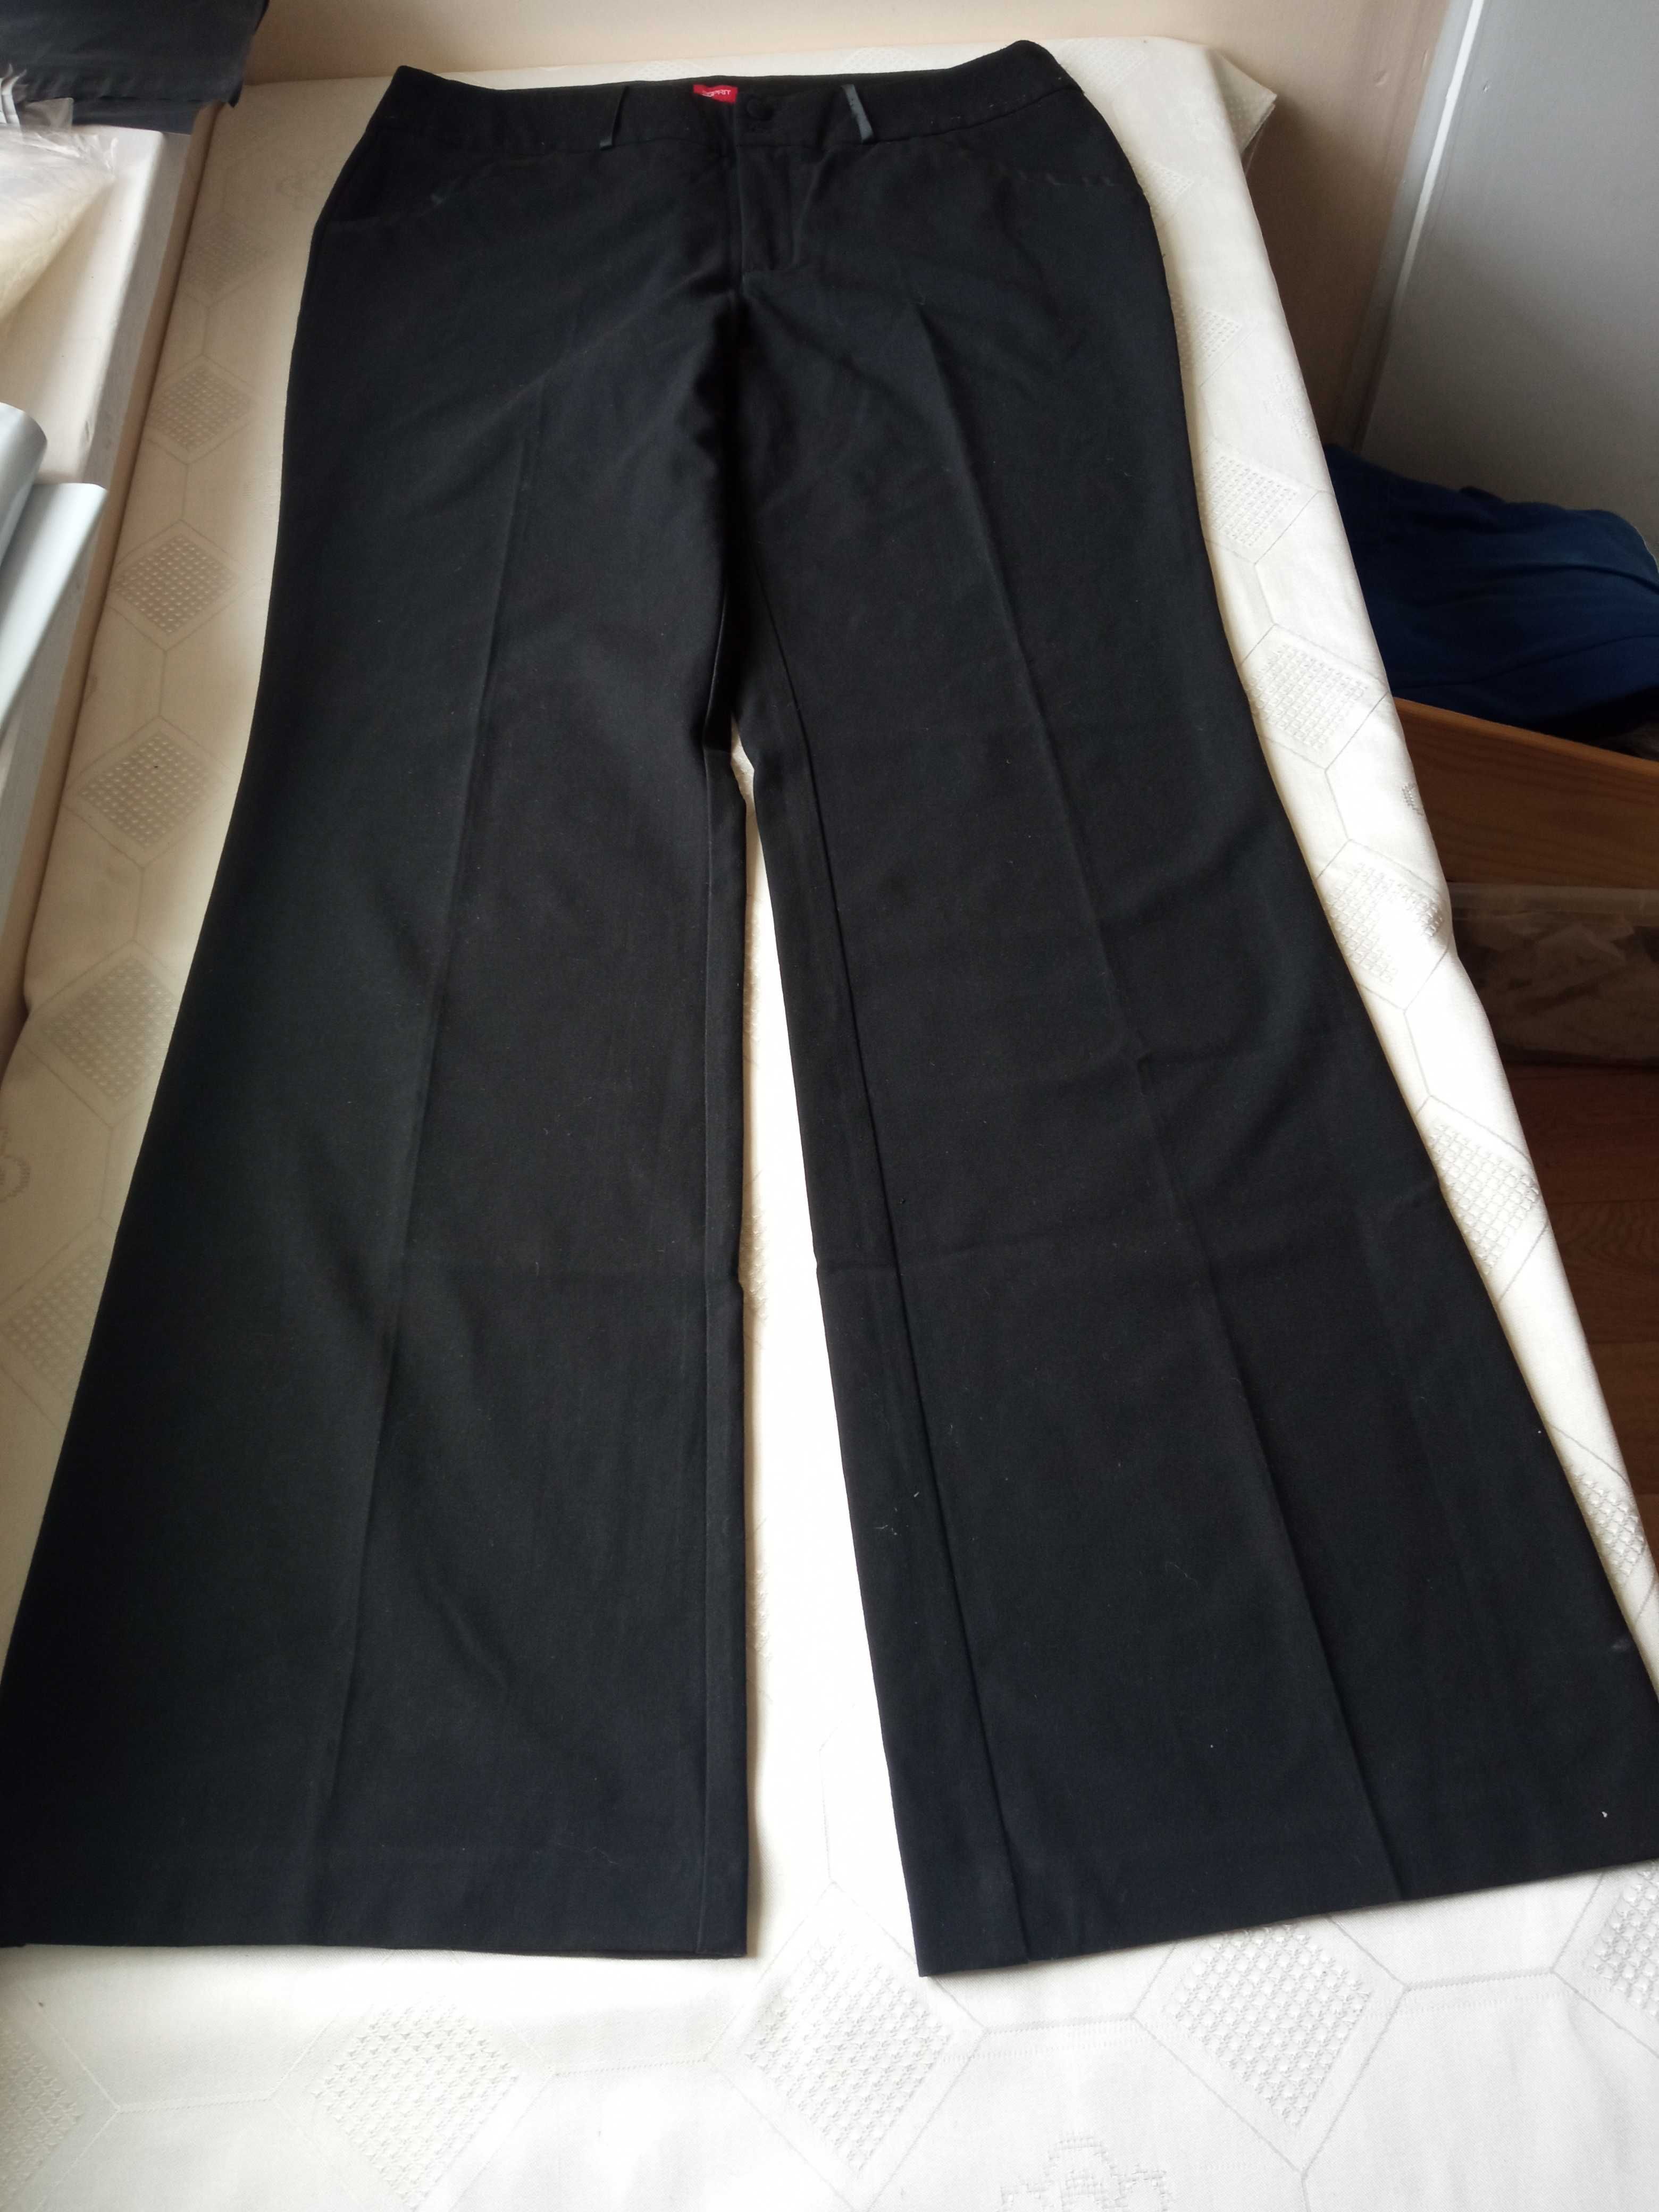 Esprit spodnie damskie ubraniowe szeroka nogawka r 42 pas 86-92cm